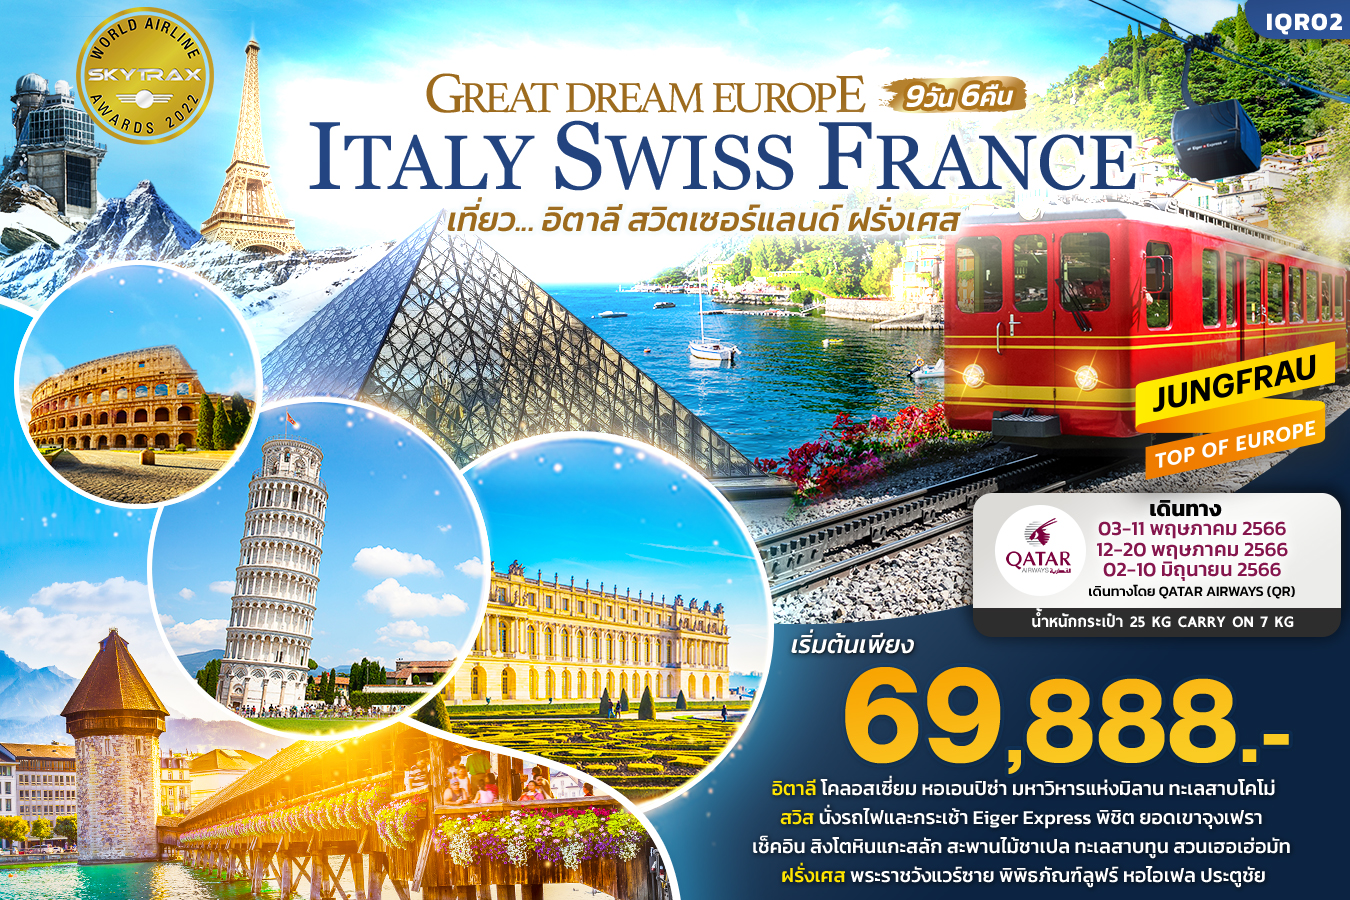 GREAT DREAM EUROPE เที่ยว... อิตาลี สวิตเซอร์แลนด์ ฝรั่งเศส  9วัน 6คืน